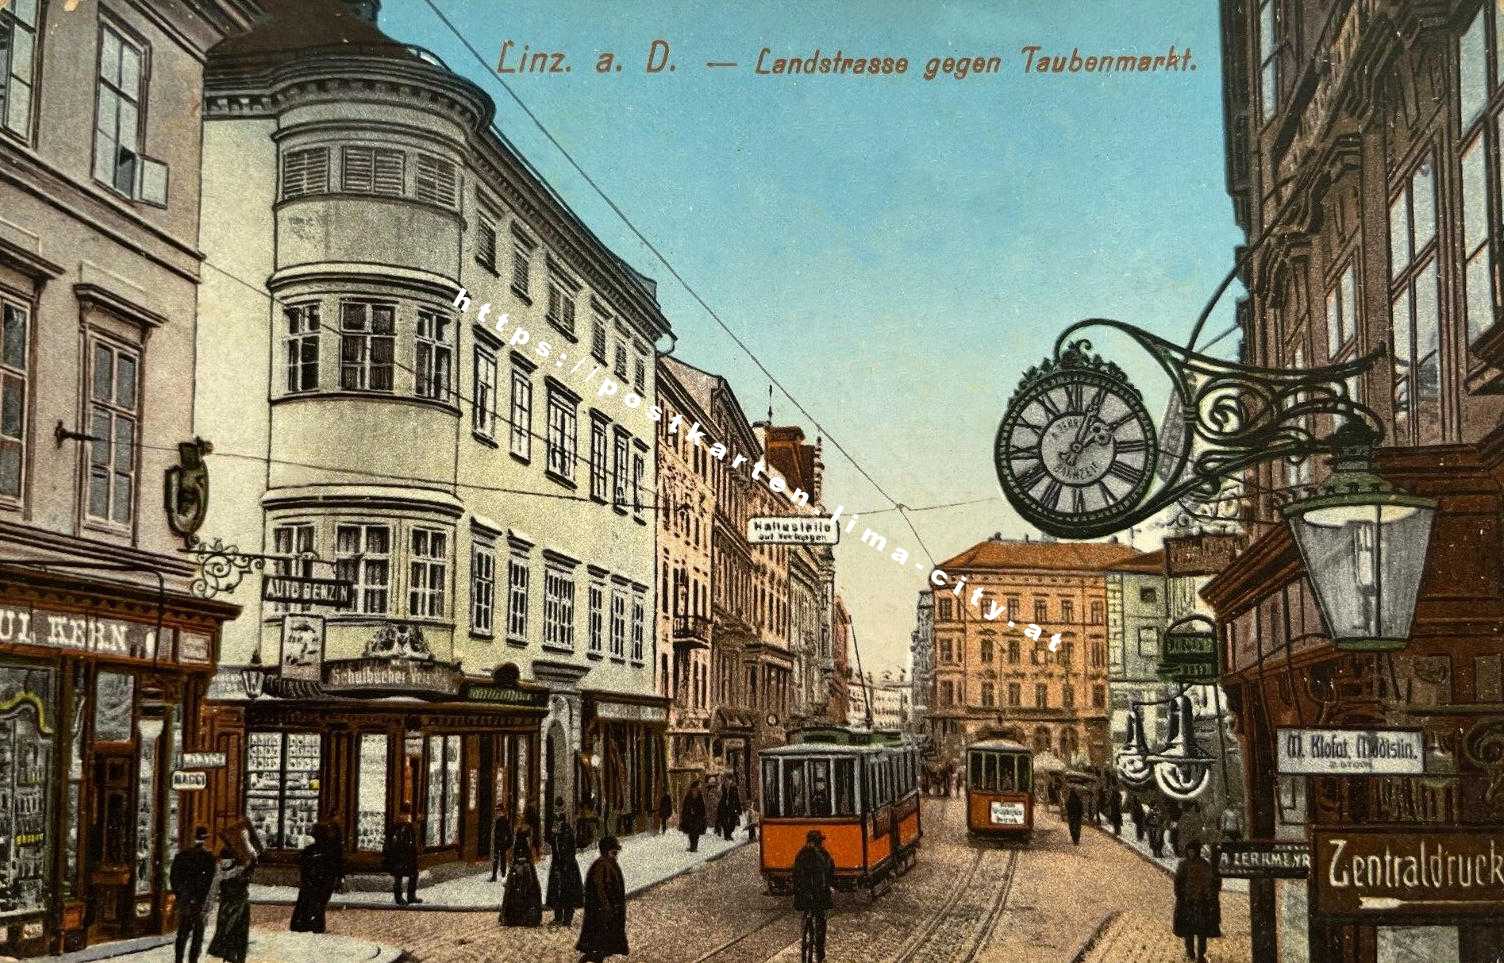 Linz Landstraße gegen Taubenmarkt 1912